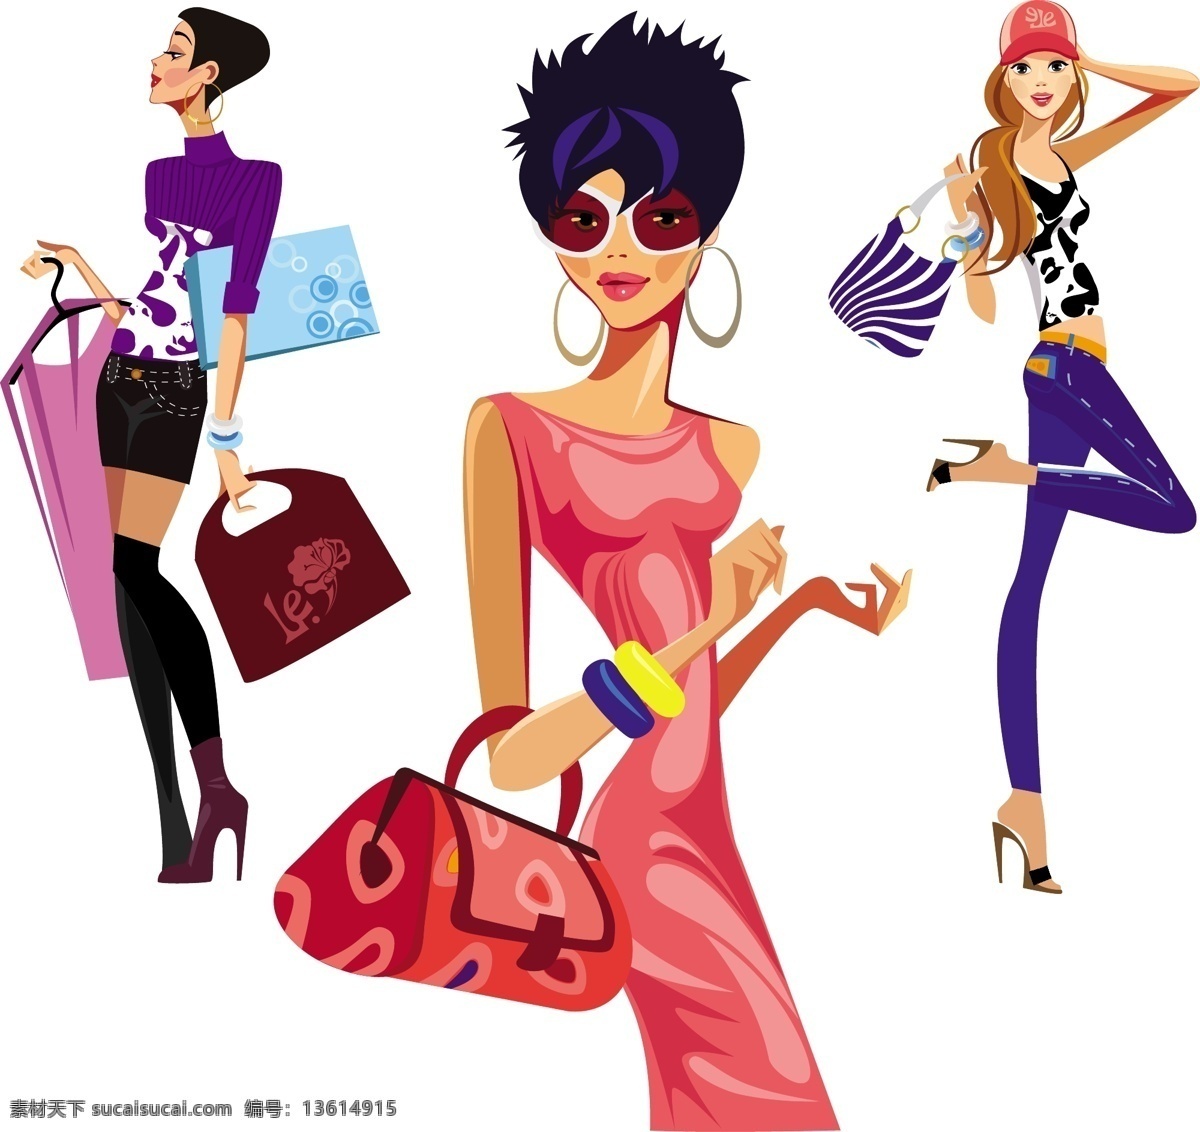 时尚购物女性 时尚 购物 提包 挎包 女性 女人 人物 性感 矢量素材 妇女女性 矢量人物 矢量 夜点时尚女性